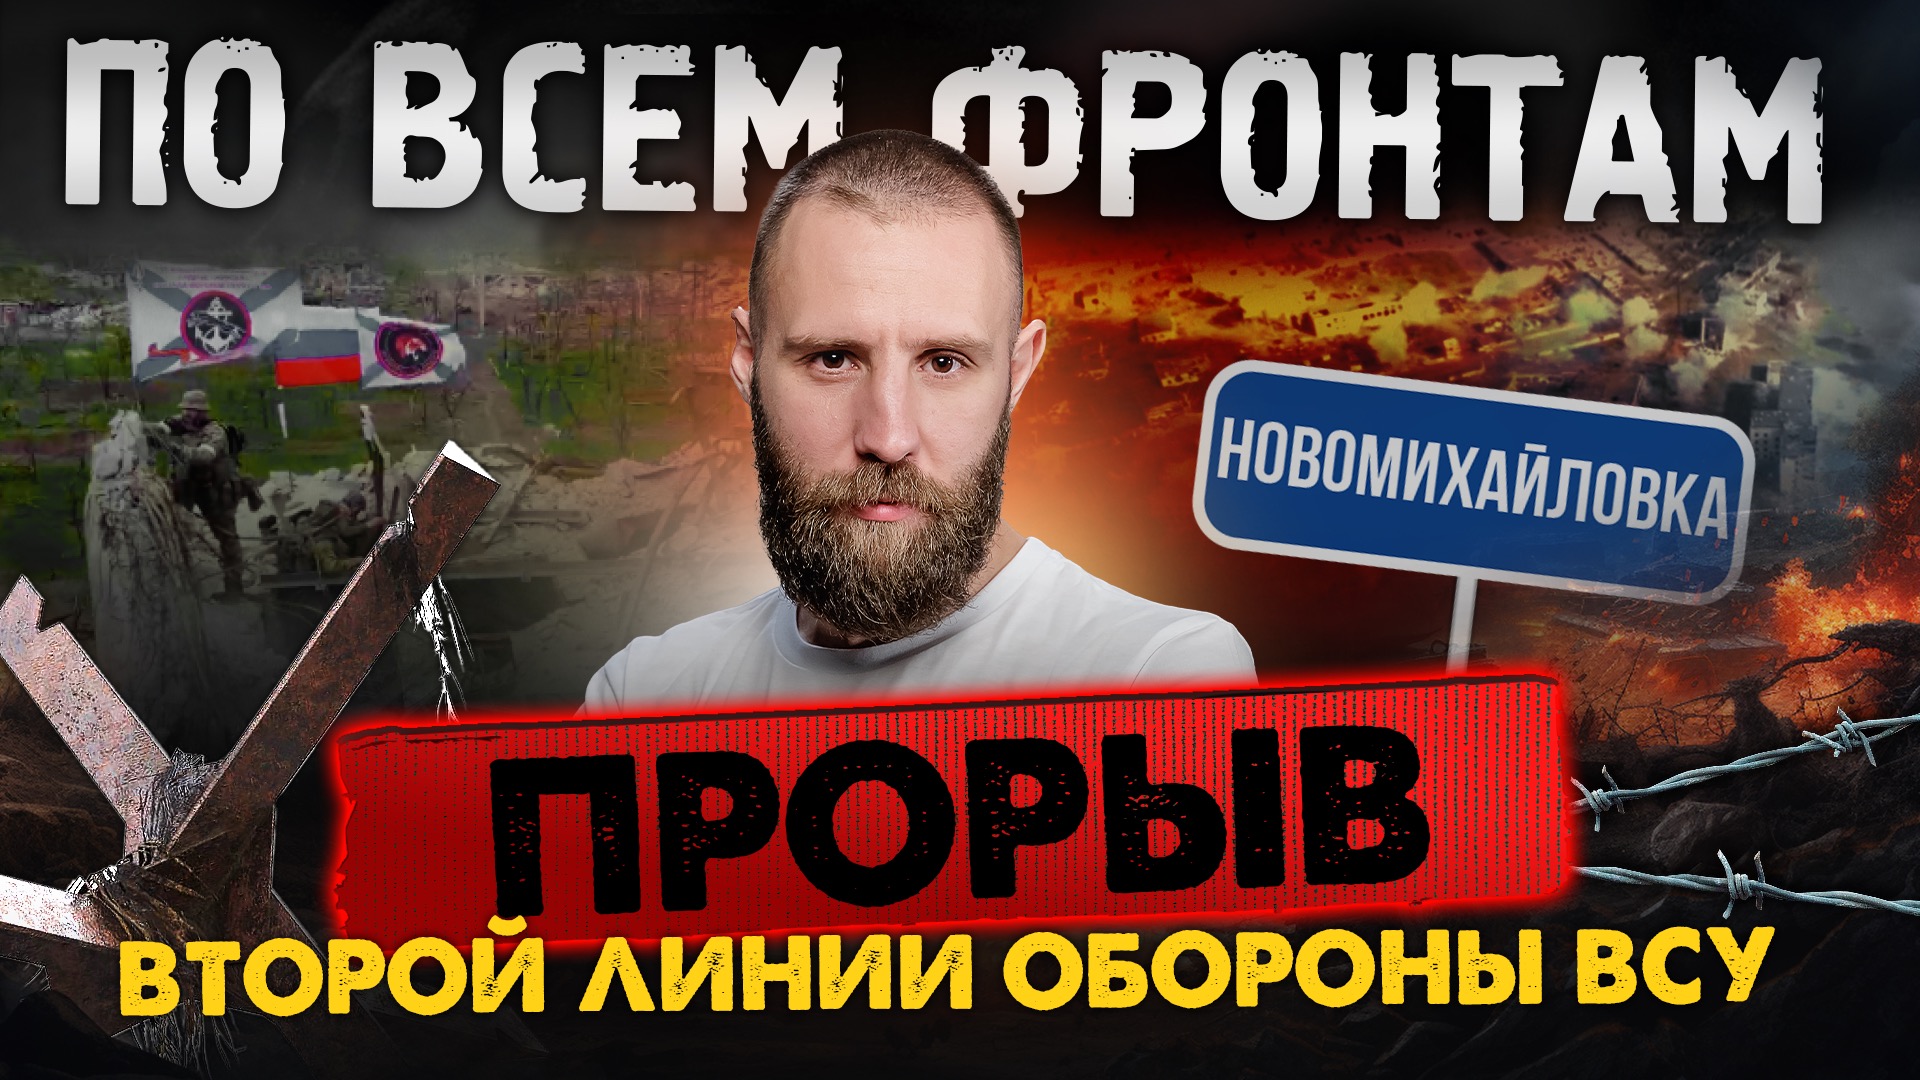 Новомихайловка наша, Бегство нацистов из Очеретино и Новобахмутовки, дезертирство в украинской армии